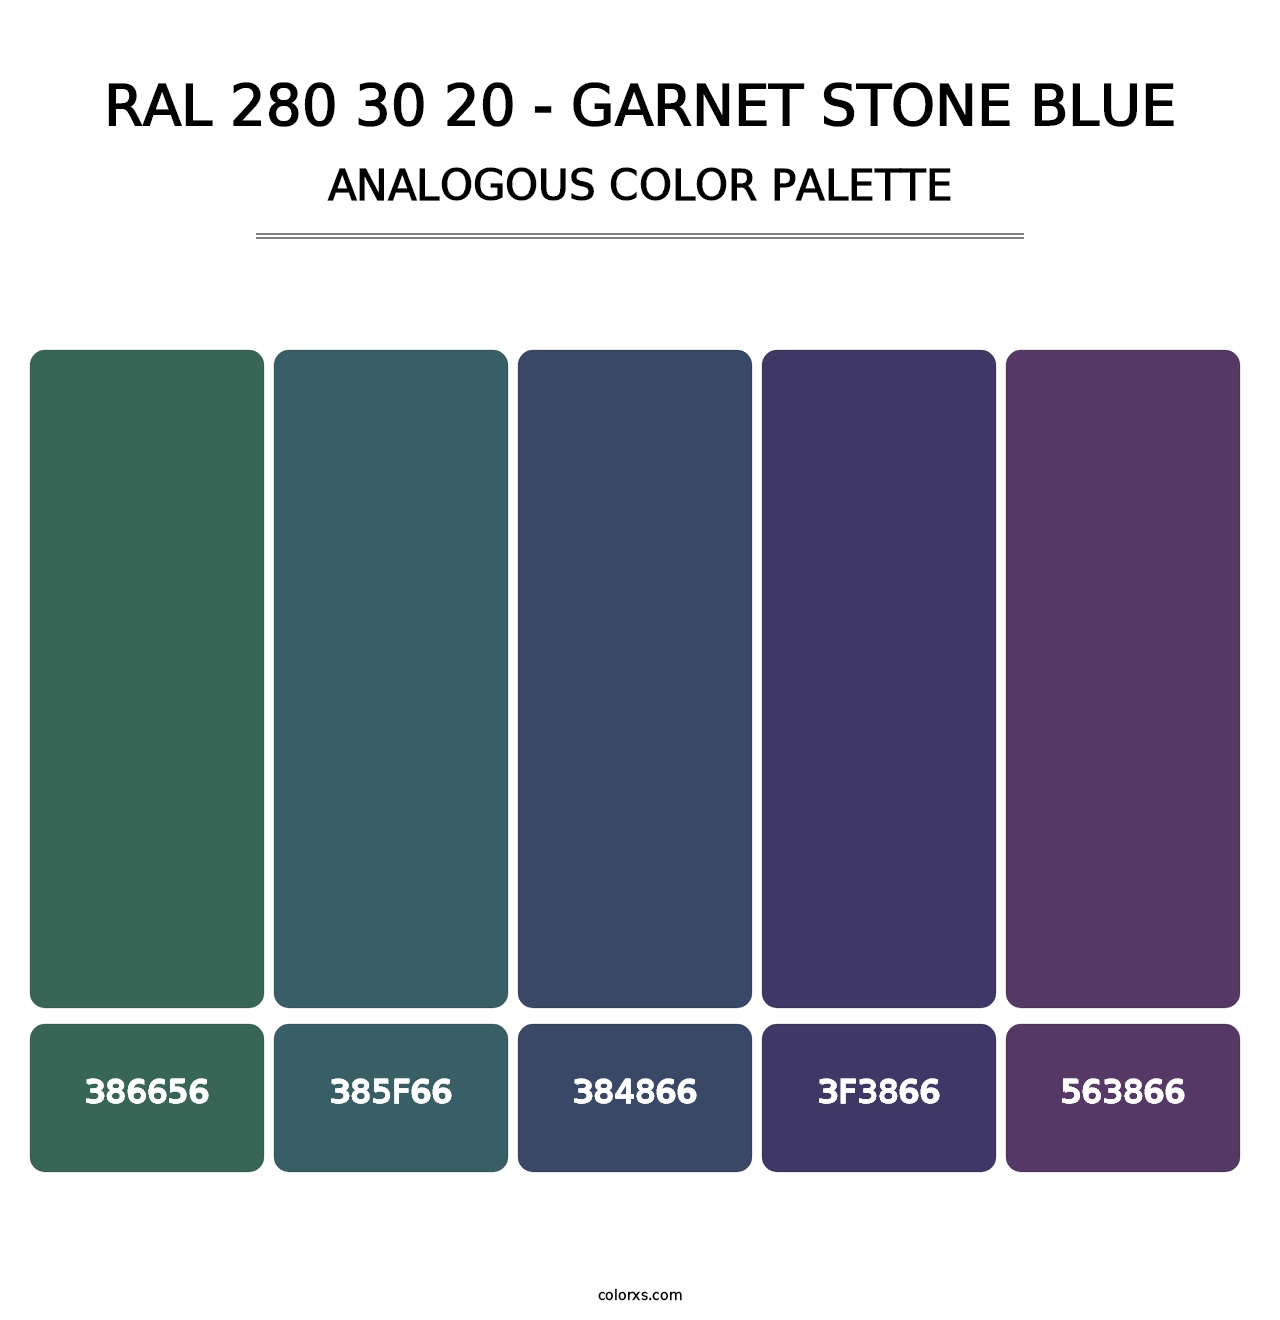 RAL 280 30 20 - Garnet Stone Blue - Analogous Color Palette